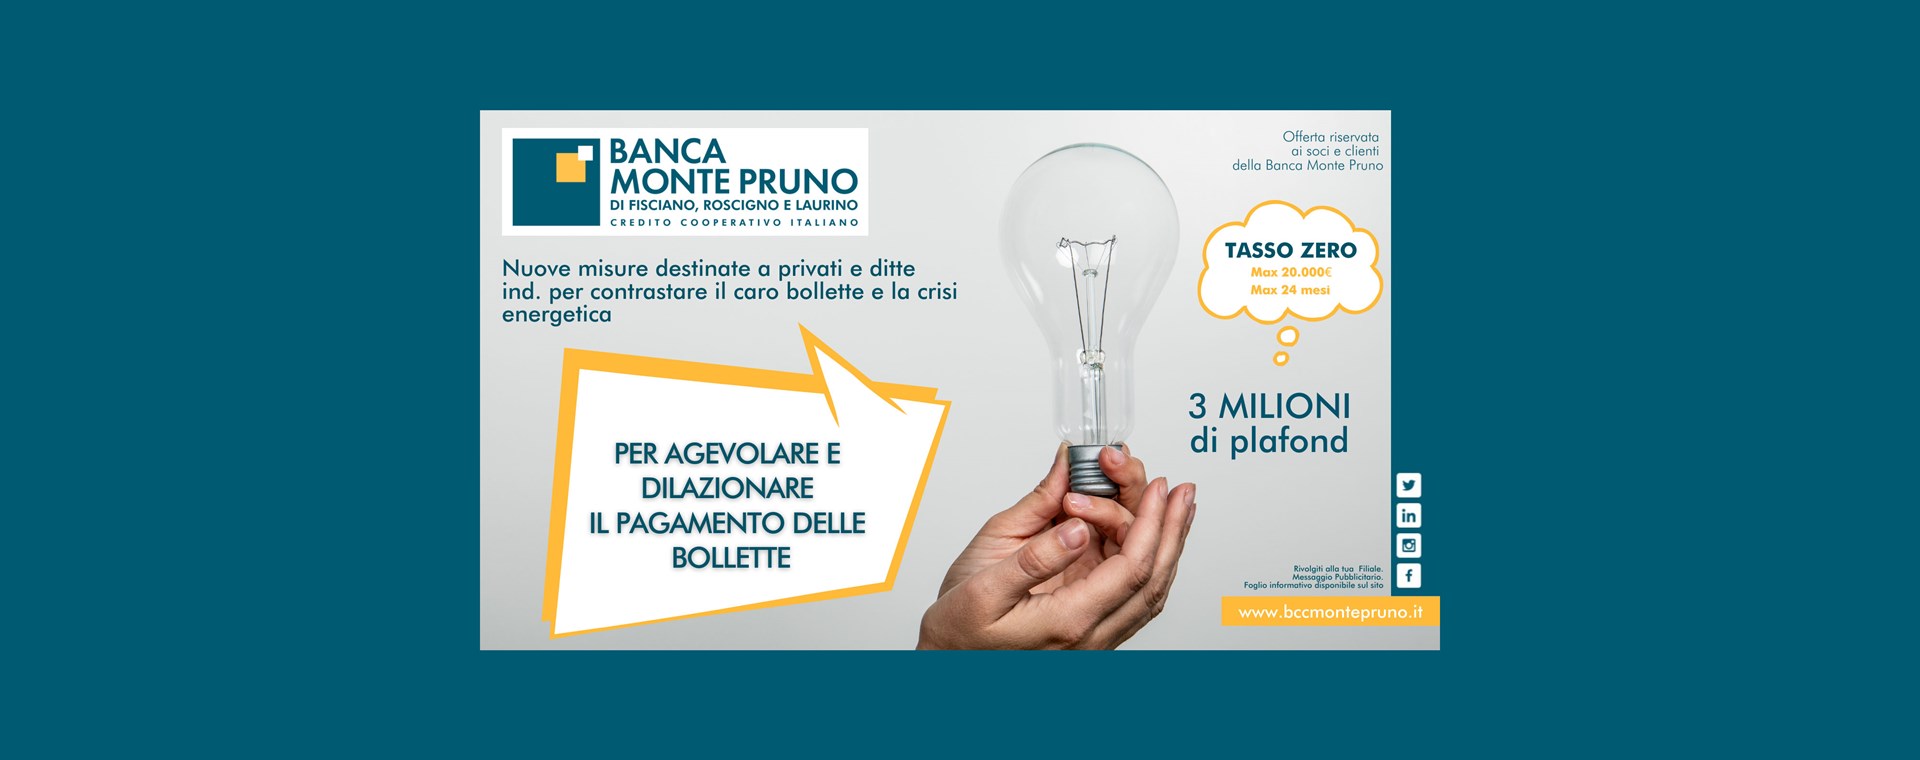 Dalla Banca Monte Pruno 3 milioni di euro per contrastare il caro bollette. 